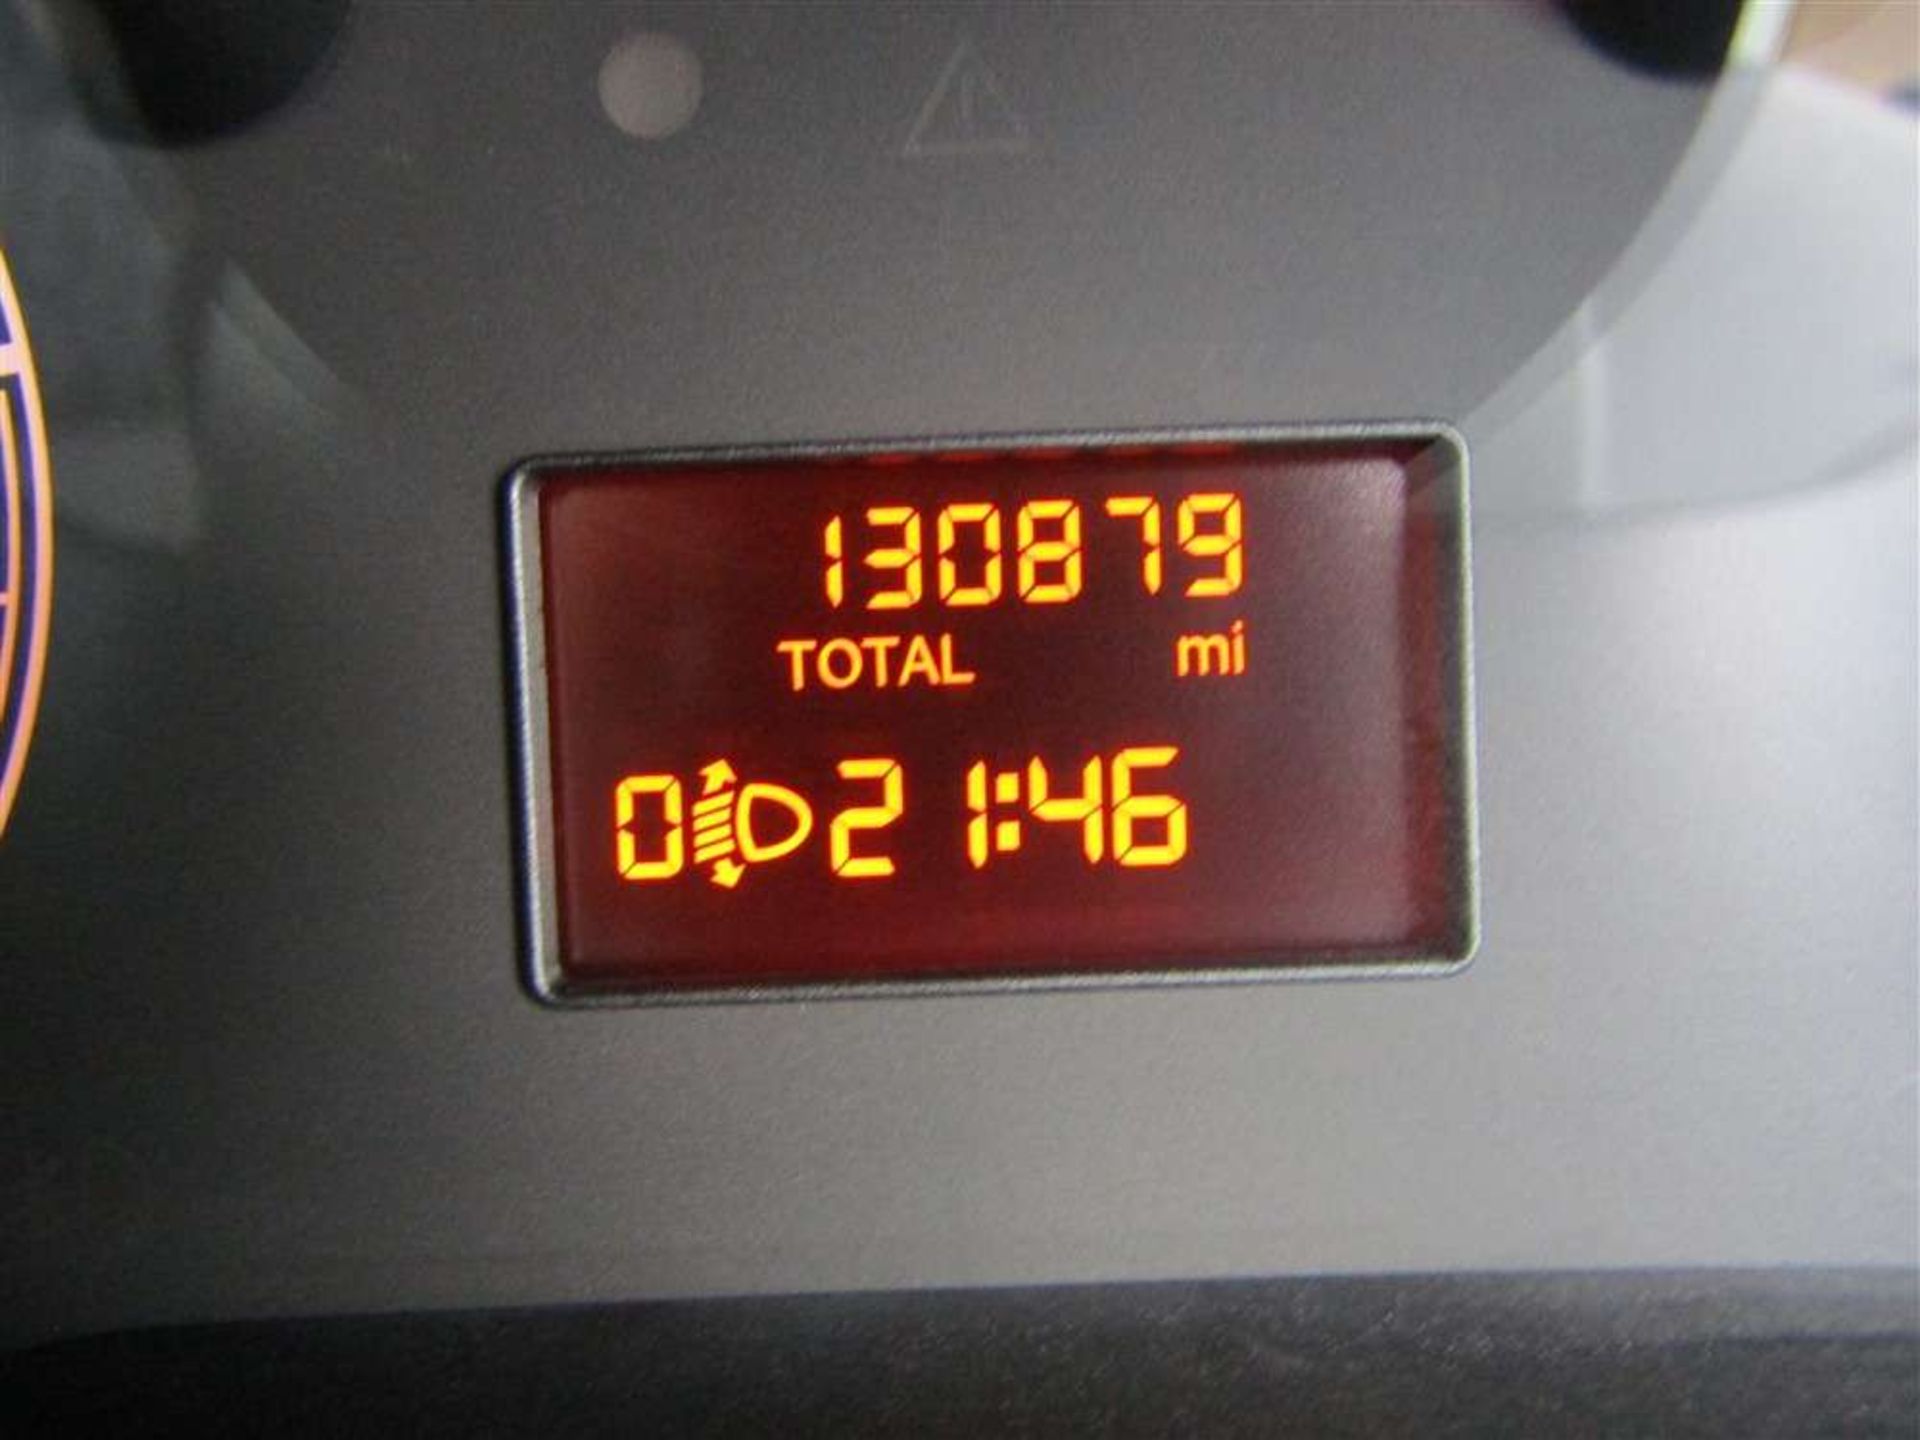 2015 65 reg Vauxhall Combo 2000 L1H1 CDTI (On VCAR CAT S) - Image 7 of 7